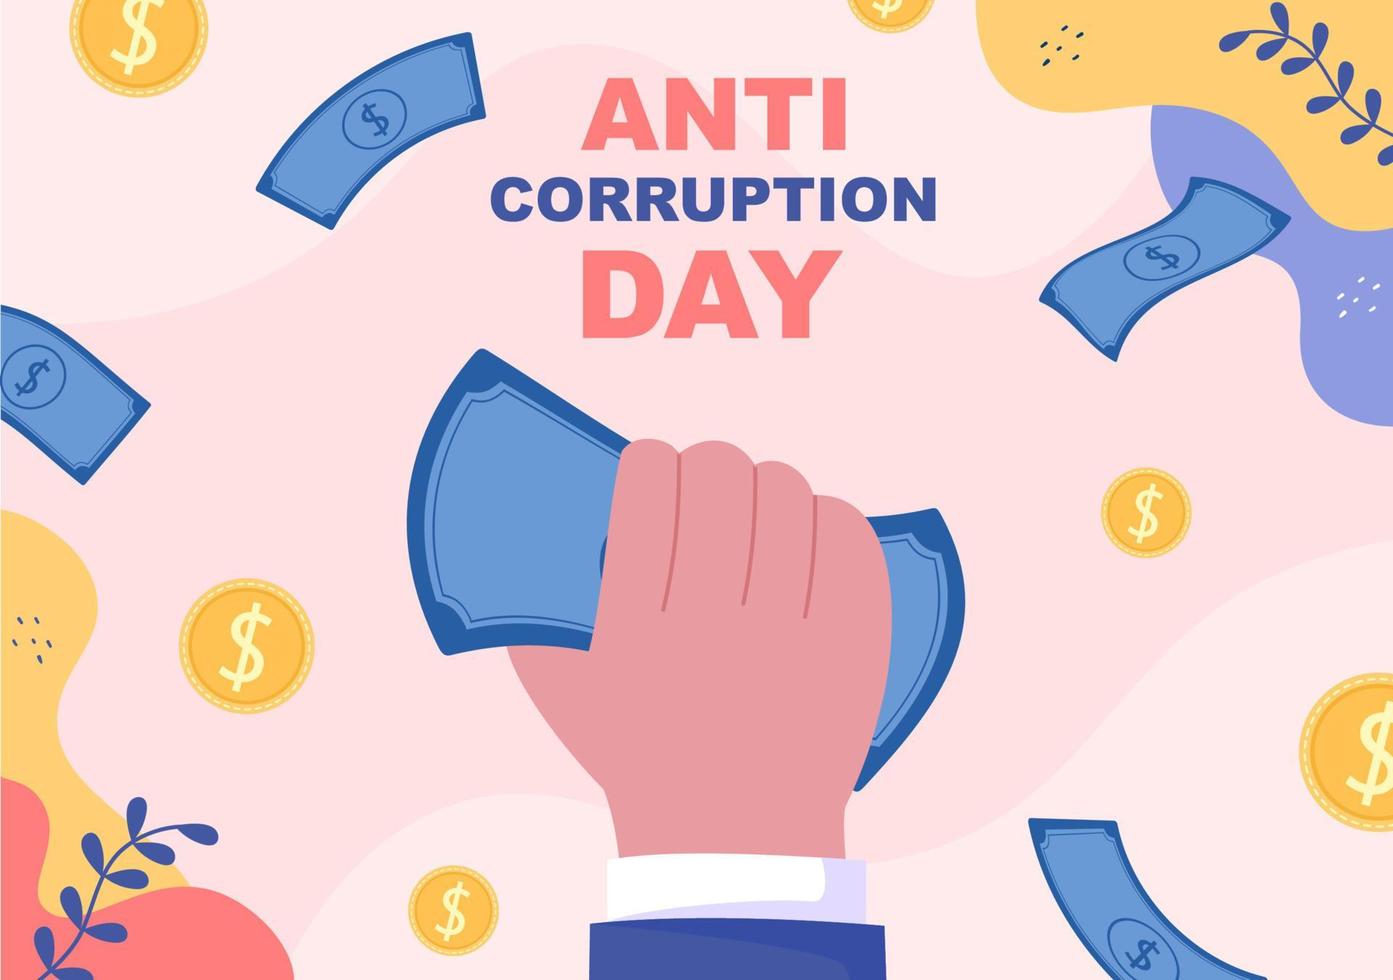 Anti-Korruptionstag, der jeden 9. Dezember begangen wird, um der Öffentlichkeit mitzuteilen, dass sie mit einem Verbotsschild in flacher Designillustration aufhören soll, Geld zu geben vektor